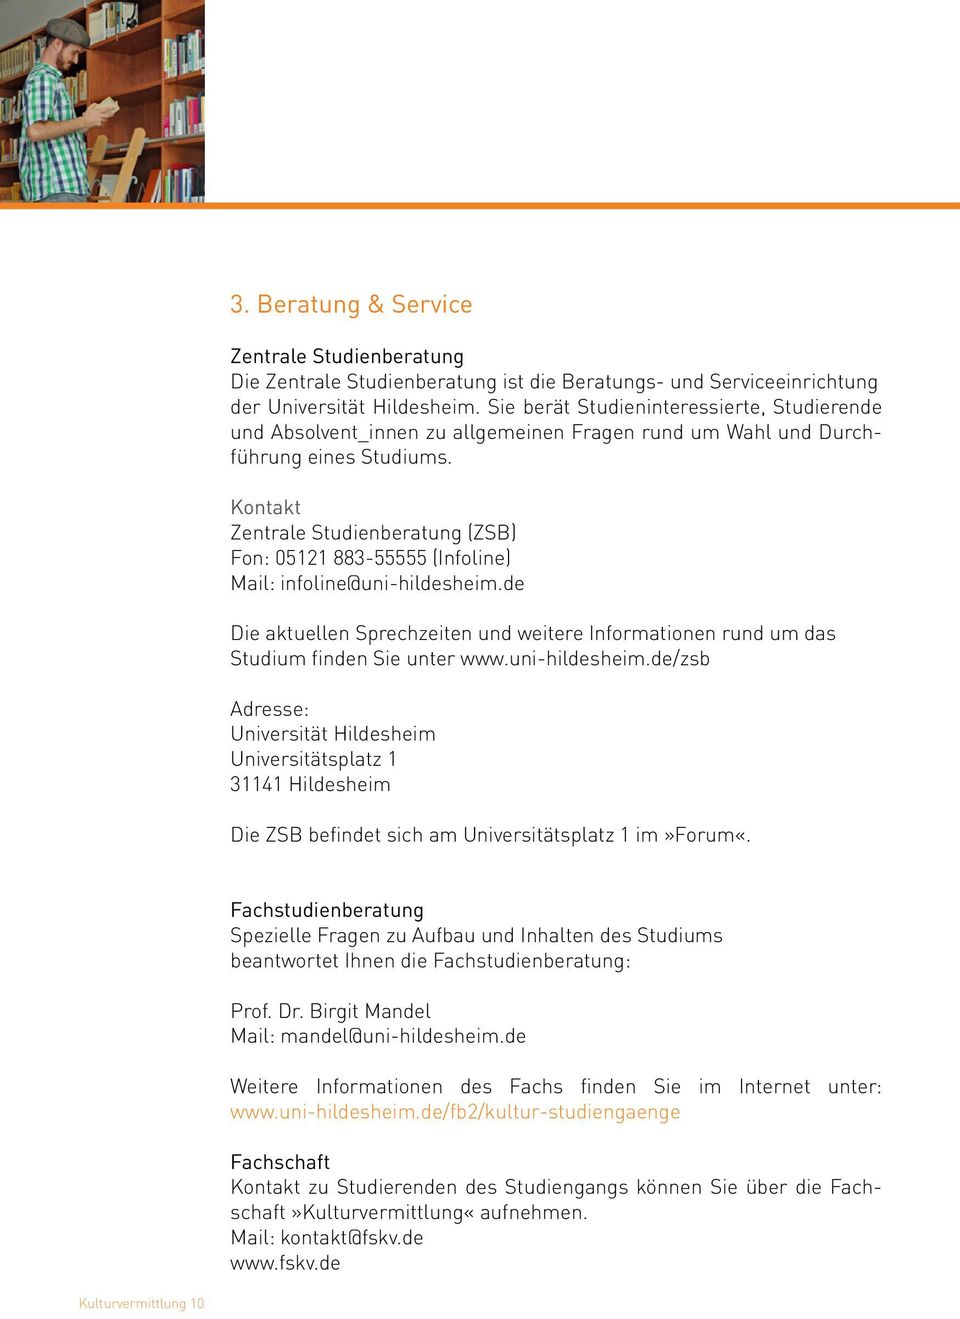 Kontakt Zentrale Studienberatung (ZSB) Fon: 05121 883-55555 (Infoline) Mail: infoline@uni-hildesheim.de Die aktuellen Sprechzeiten und weitere Informationen rund um das Studium finden Sie unter www.